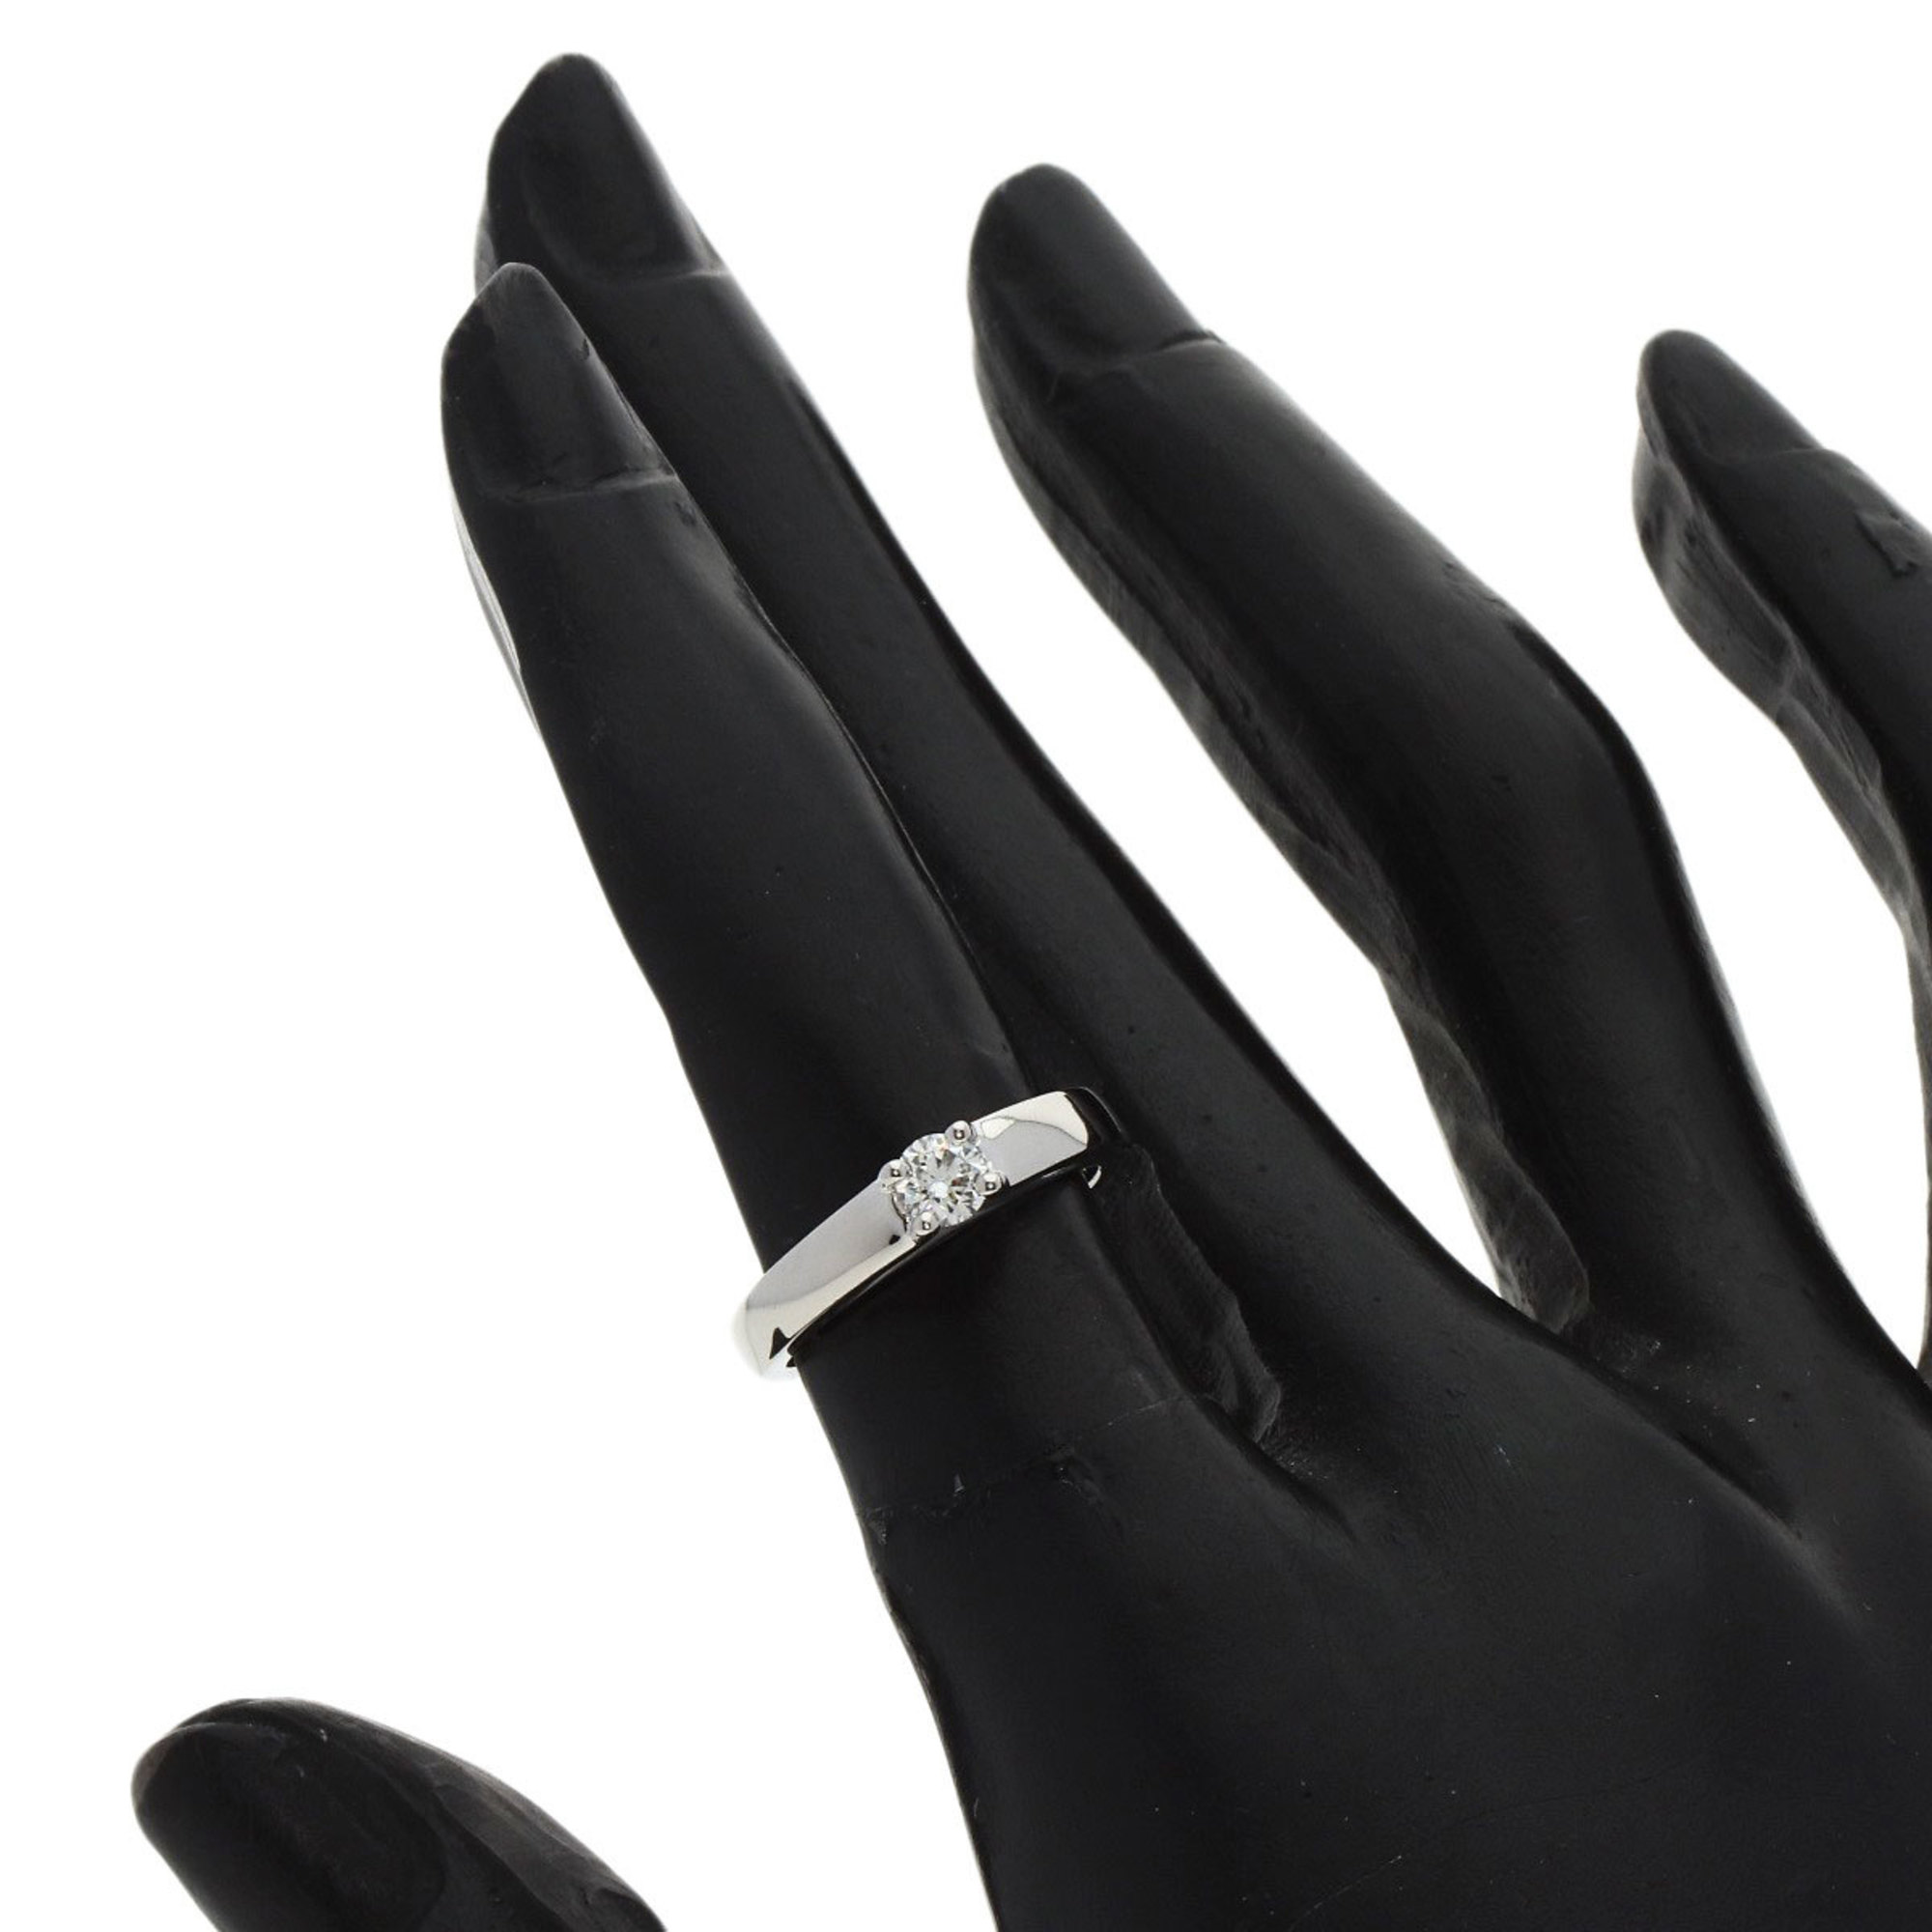 BVLGARI Griff Solitaire 1P Diamond Ring, Platinum PT950, Women's